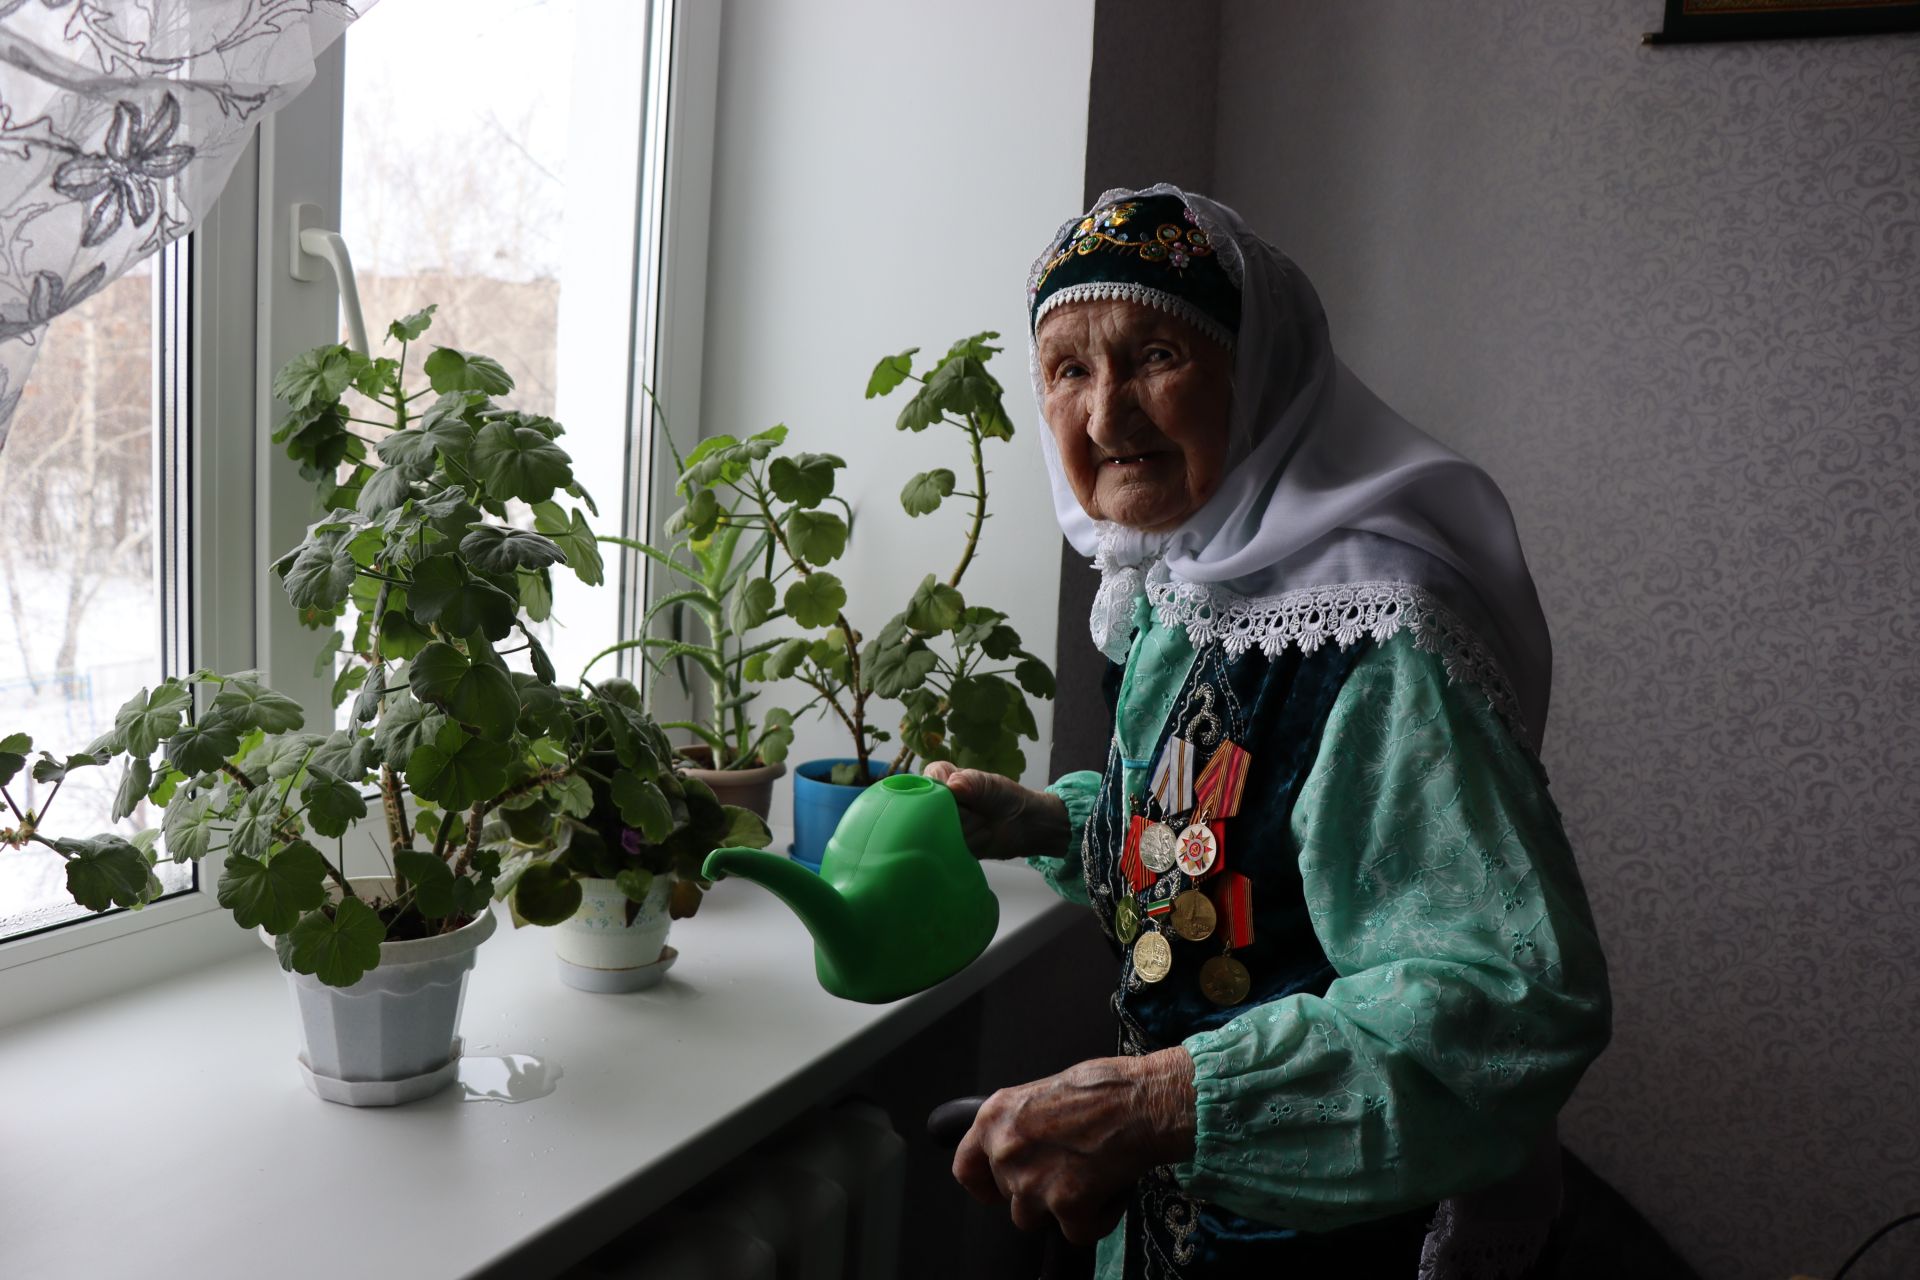 Дамир Ишкинеев поздравил долгожительницу с юбилеем